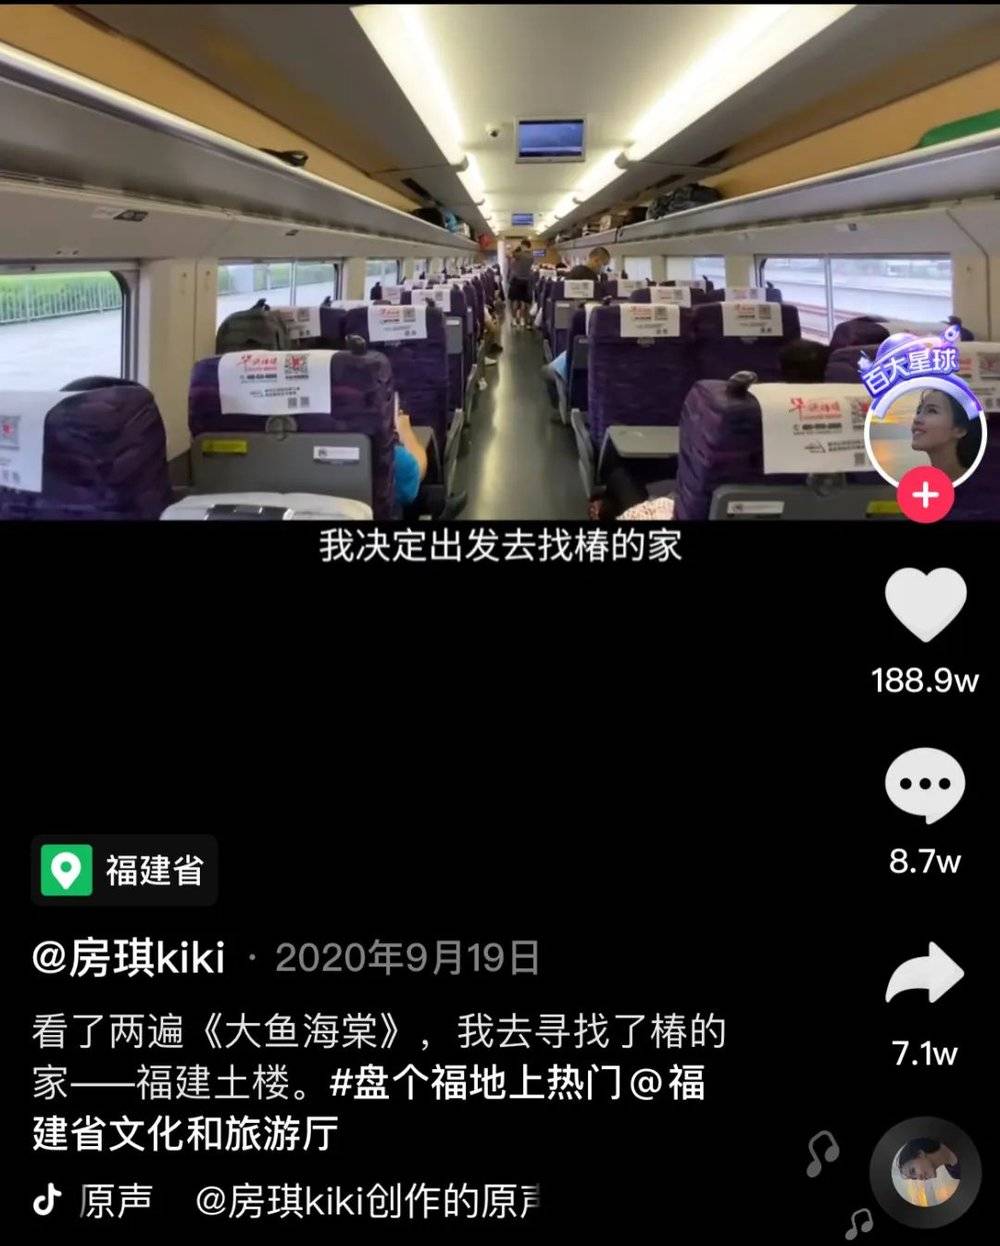 抖音认证优质视频创作者房琪kiki（1150.7万粉丝），旅游视频中经常有故事的叙述视角。图片来源：抖音<br>